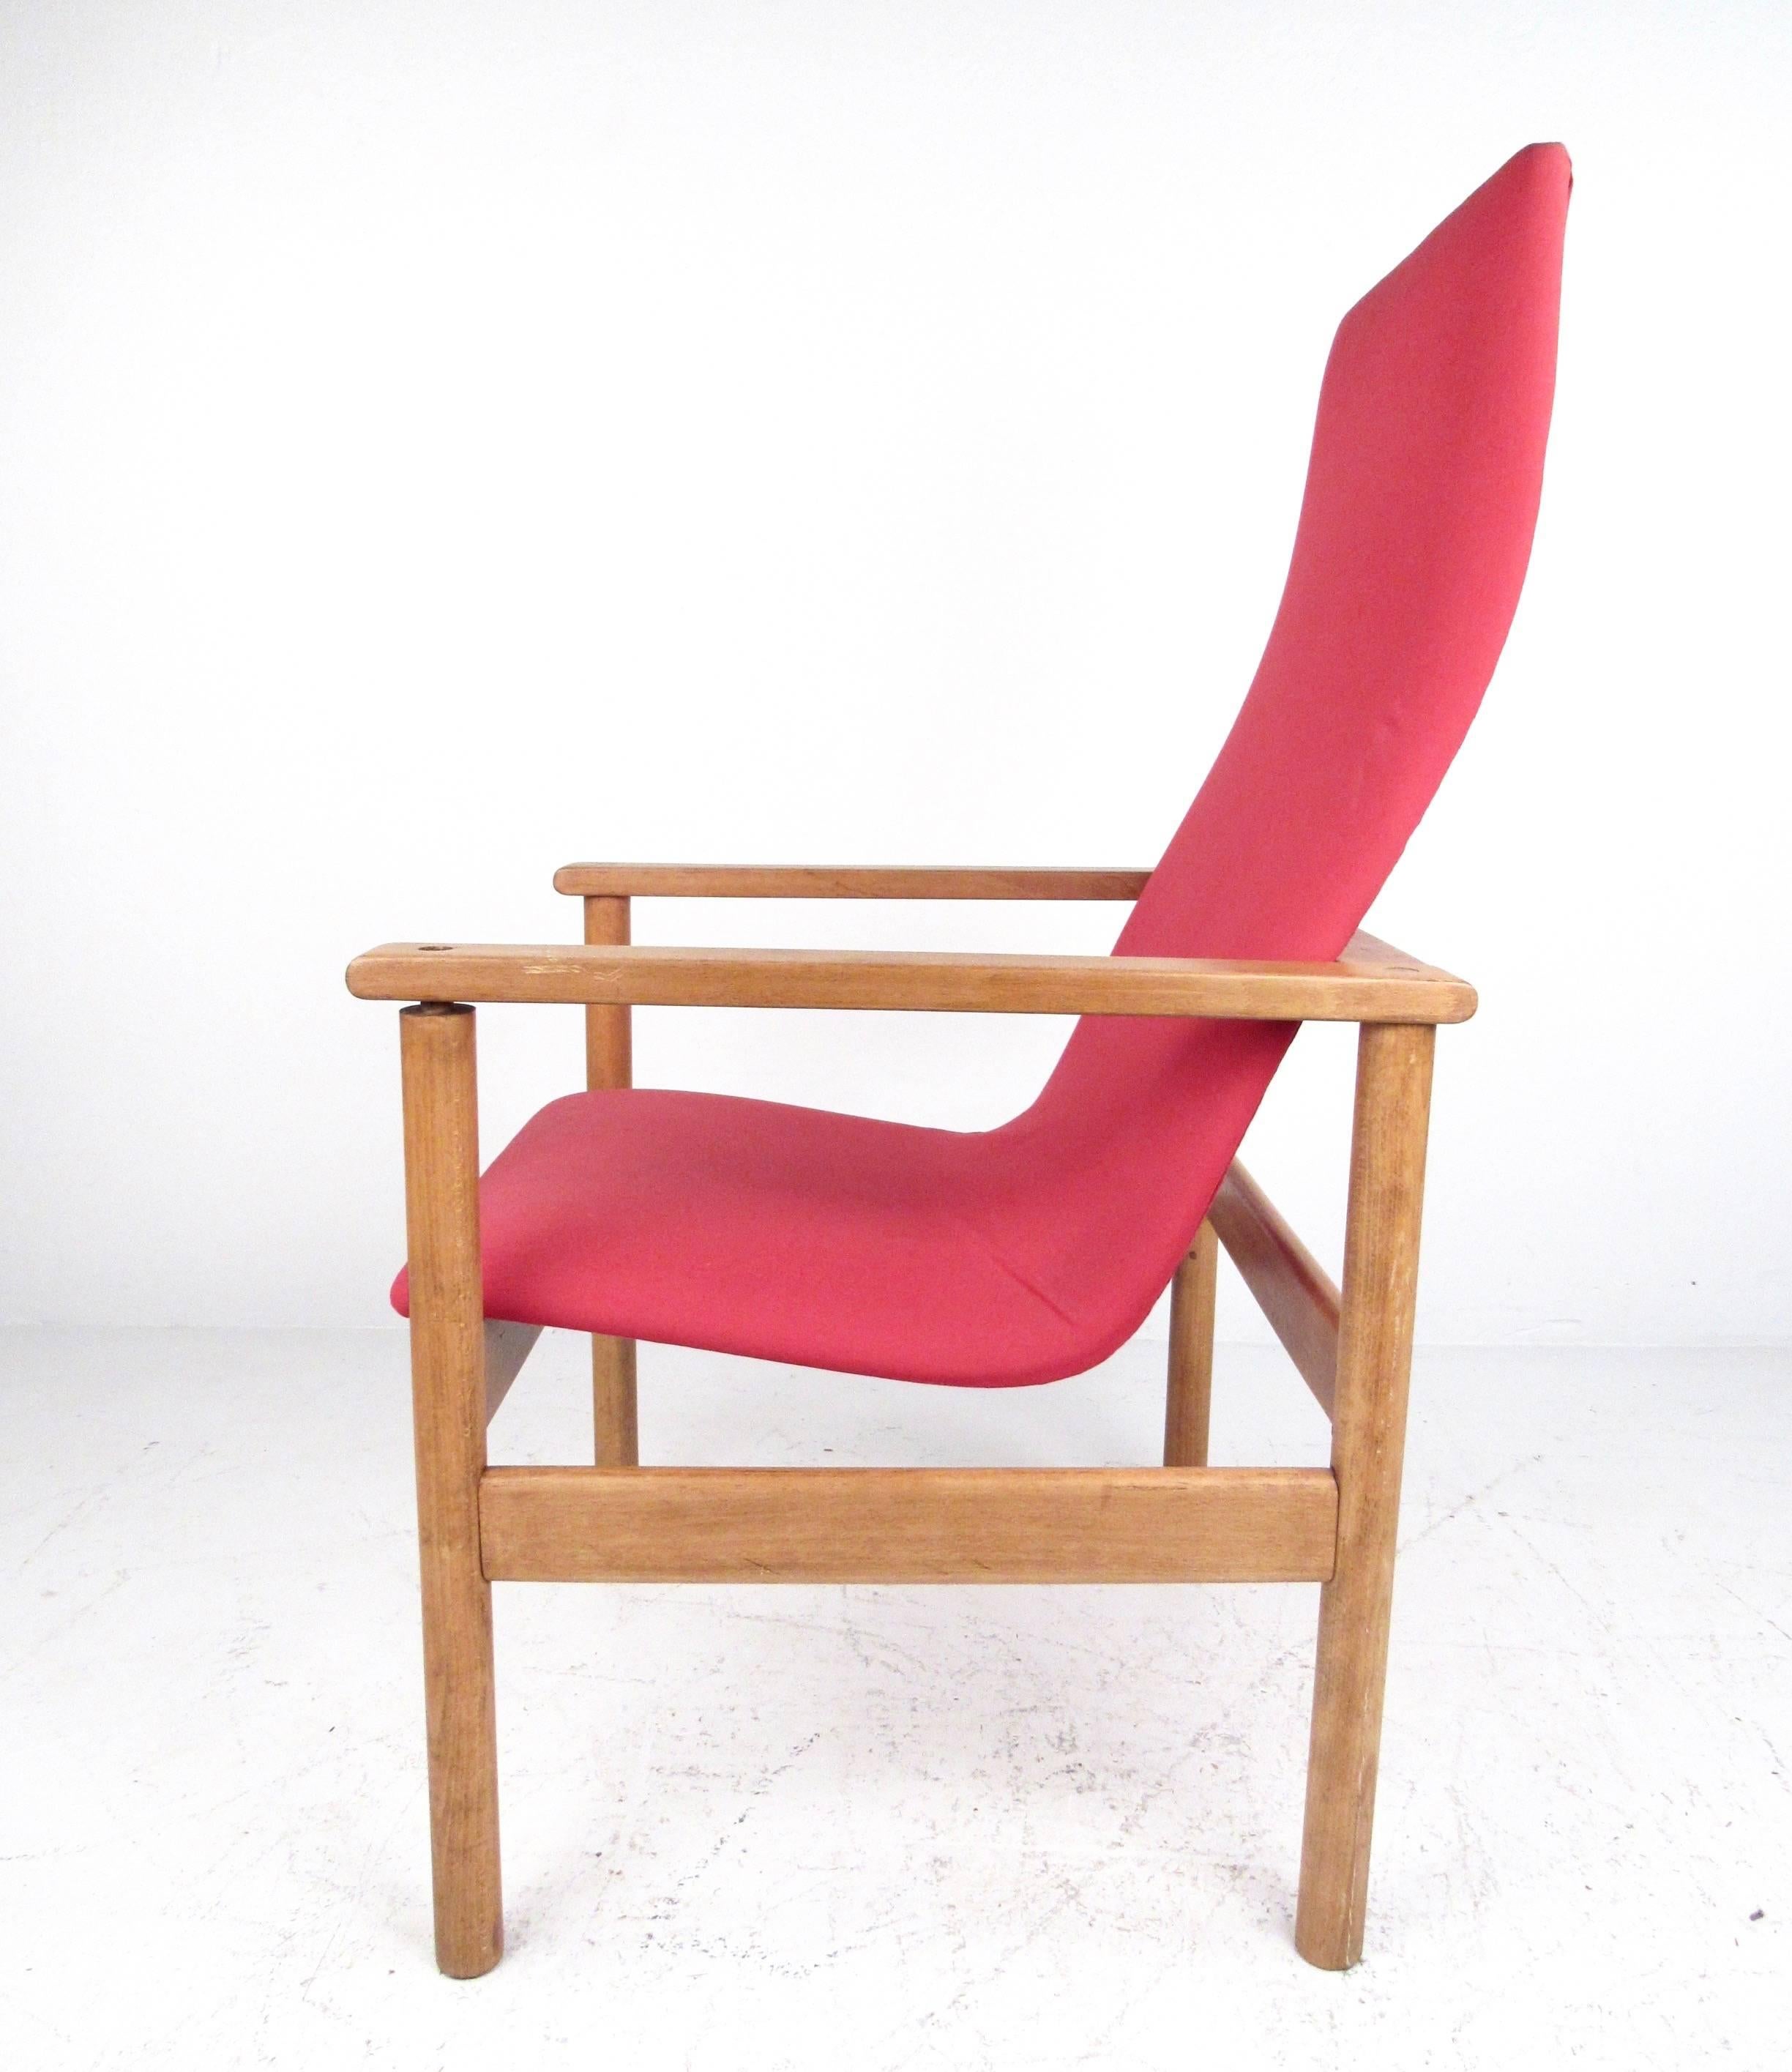 Cet élégant fauteuil Mid-Century présente une structure en bois dur vintage avec un siège ergonomique à haut dossier sculpté. La simplicité moderne rencontre le style intemporel de cette chaise longue vintage, parfaite pour la maison ou le bureau.